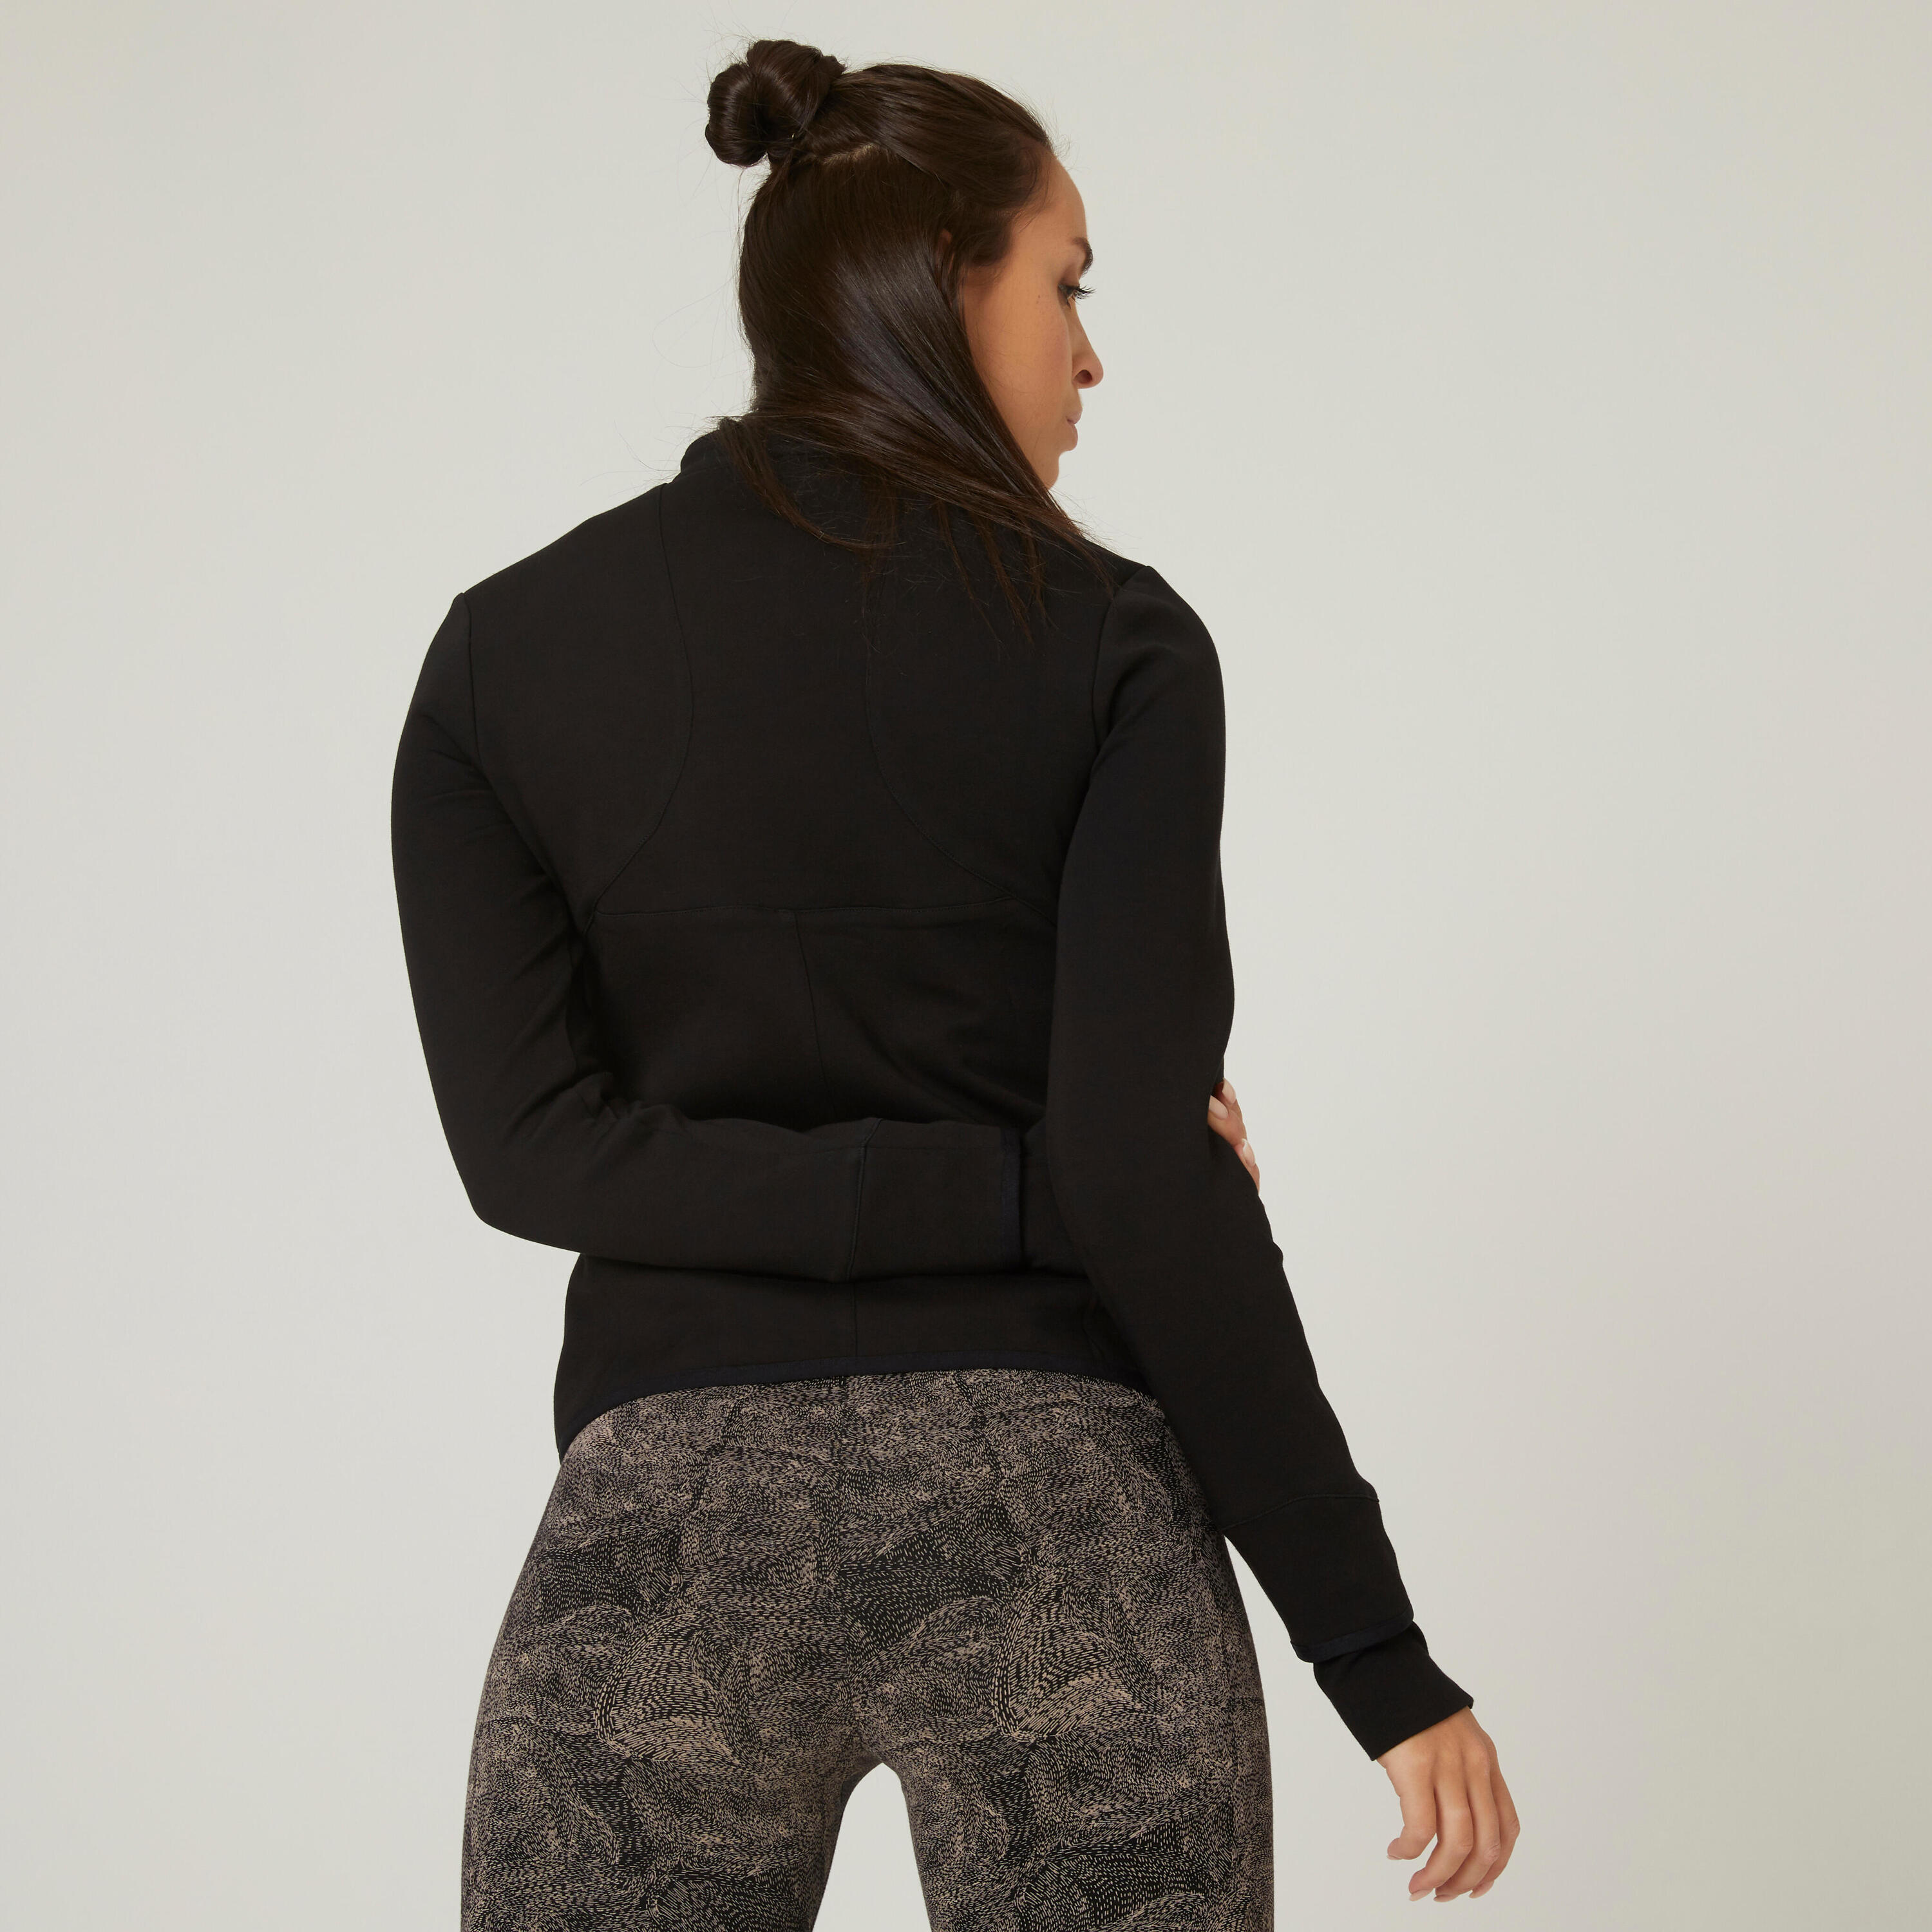 Women's Fitness Zip Sweatshirt 500 - Spacer Black 2/9